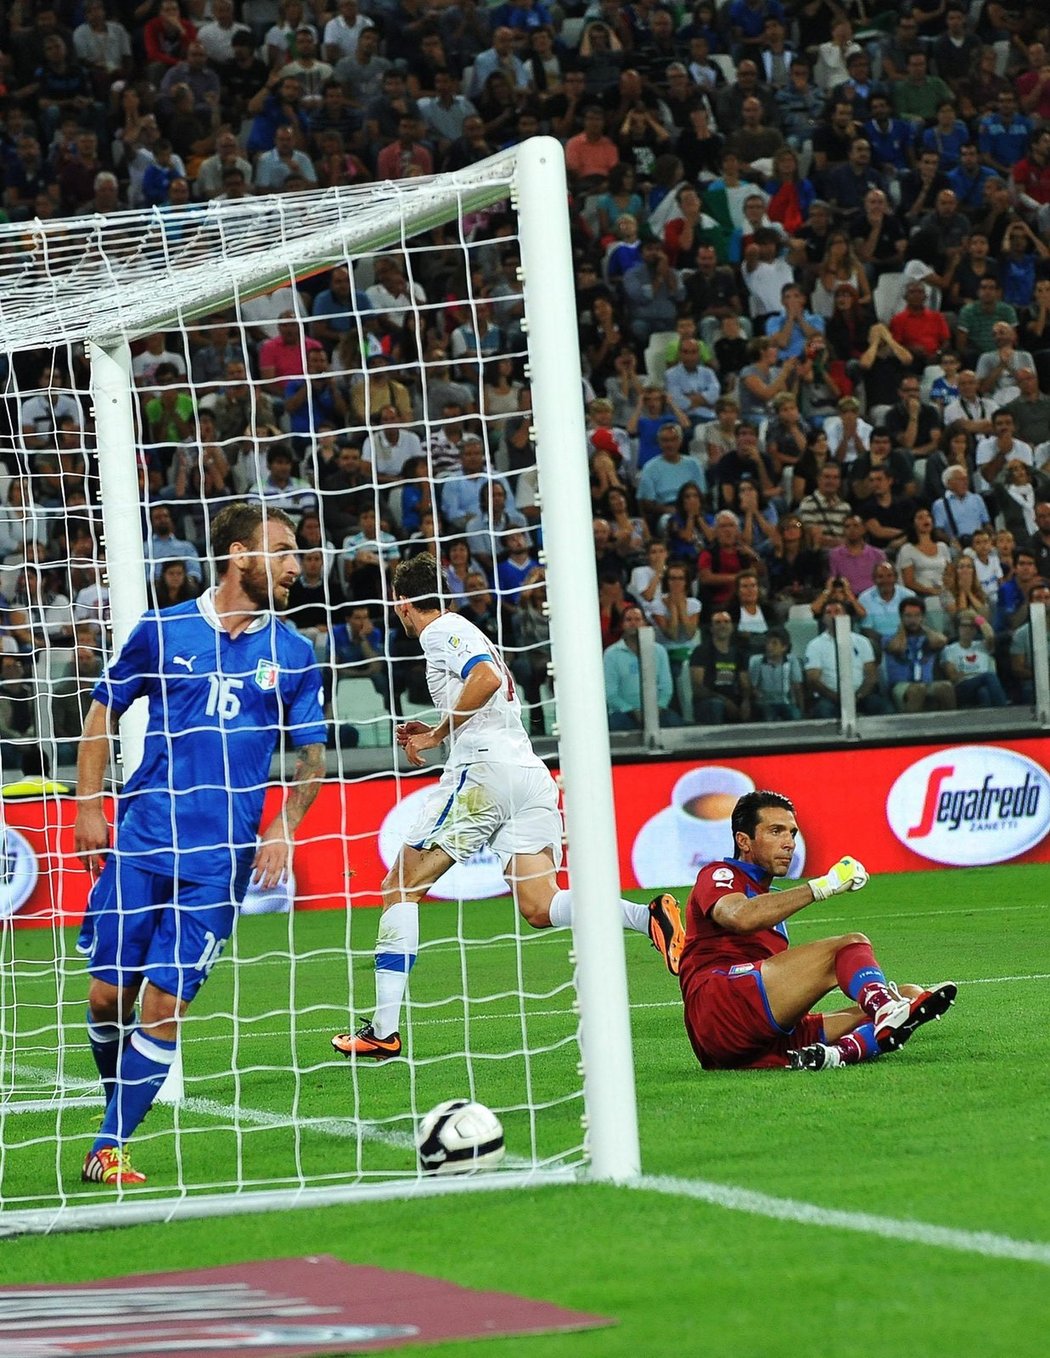 Šok! Gianluigi Buffon byl po dvaceti minutách zápasu překonán Liborem Kozákem